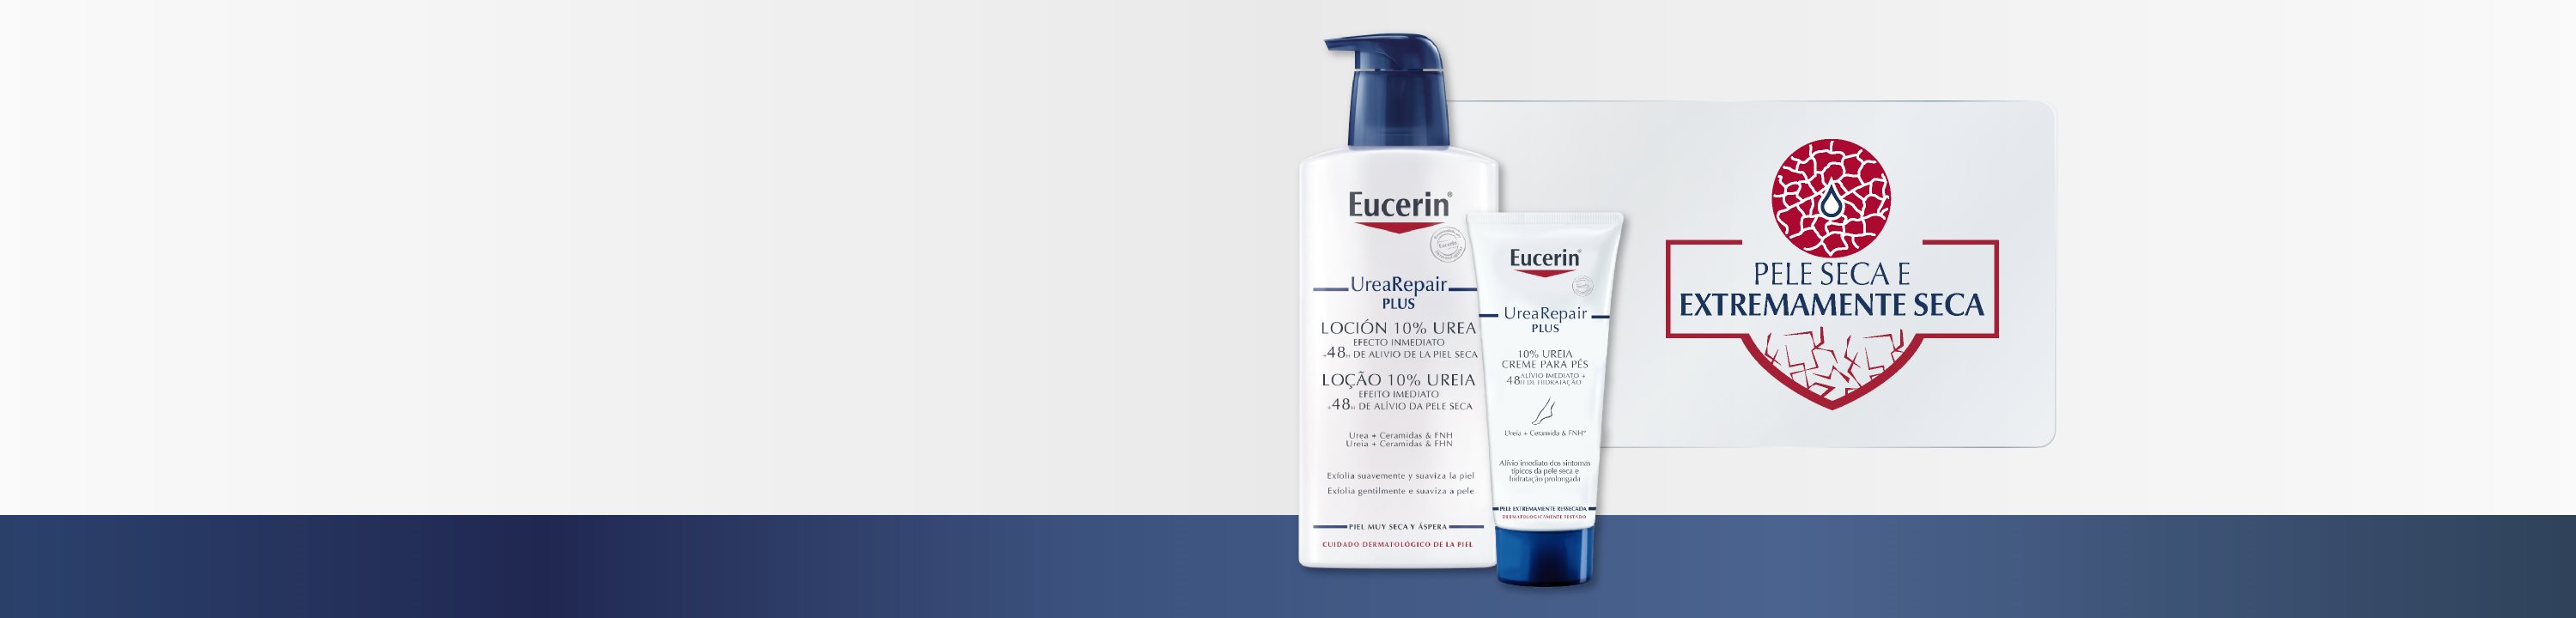 produtos Eucerin para pele seca e sensível